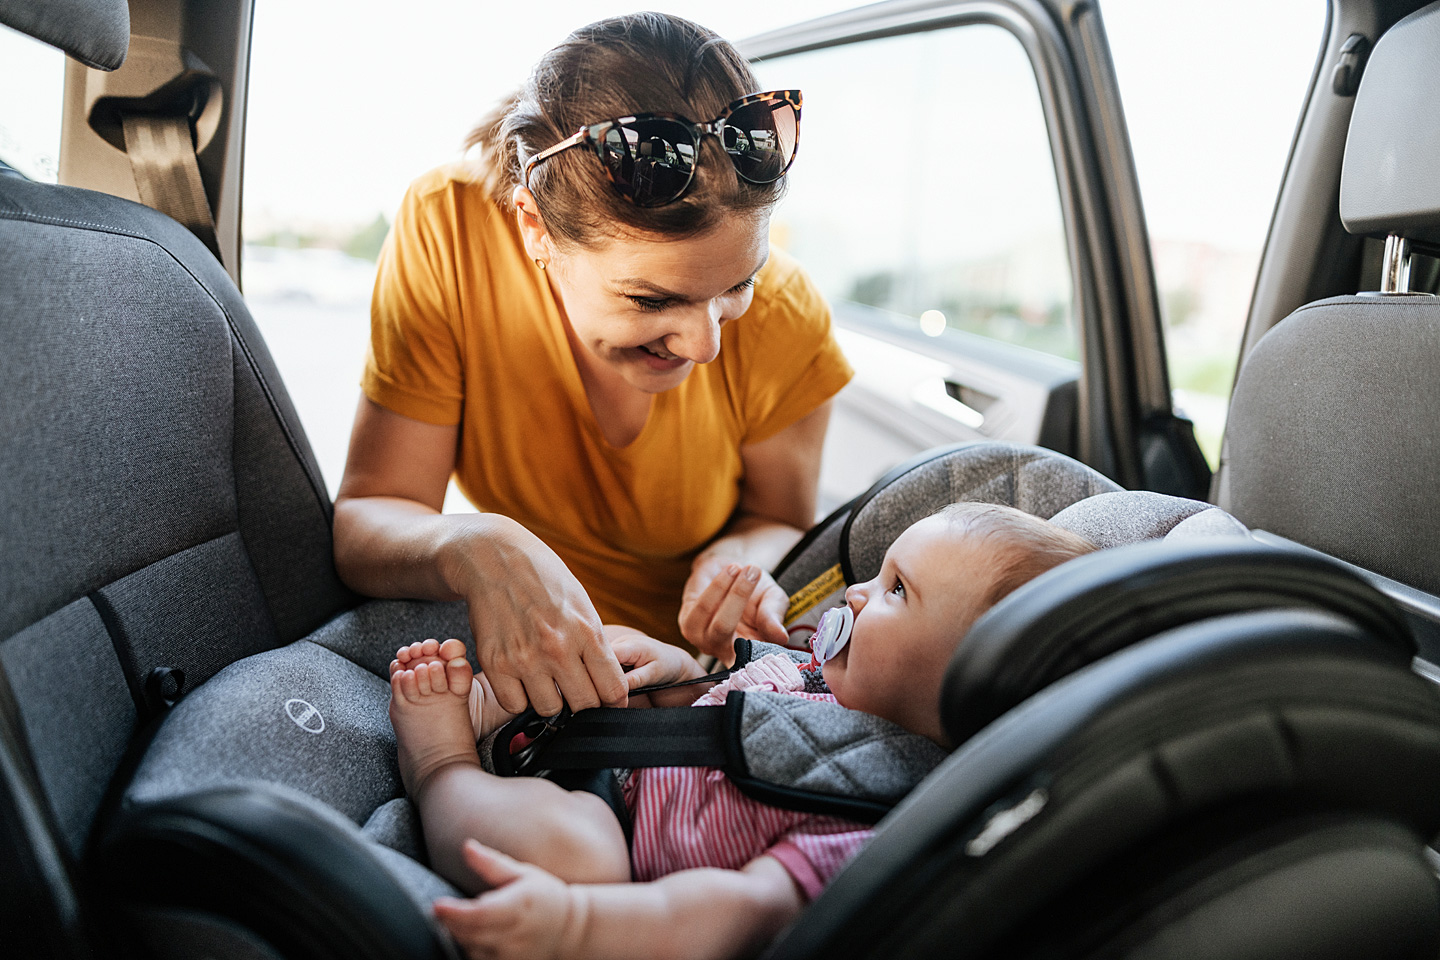 Baby im Auto: Sicherheit geht vor - Auswahl und Befestigung der Babyschale  